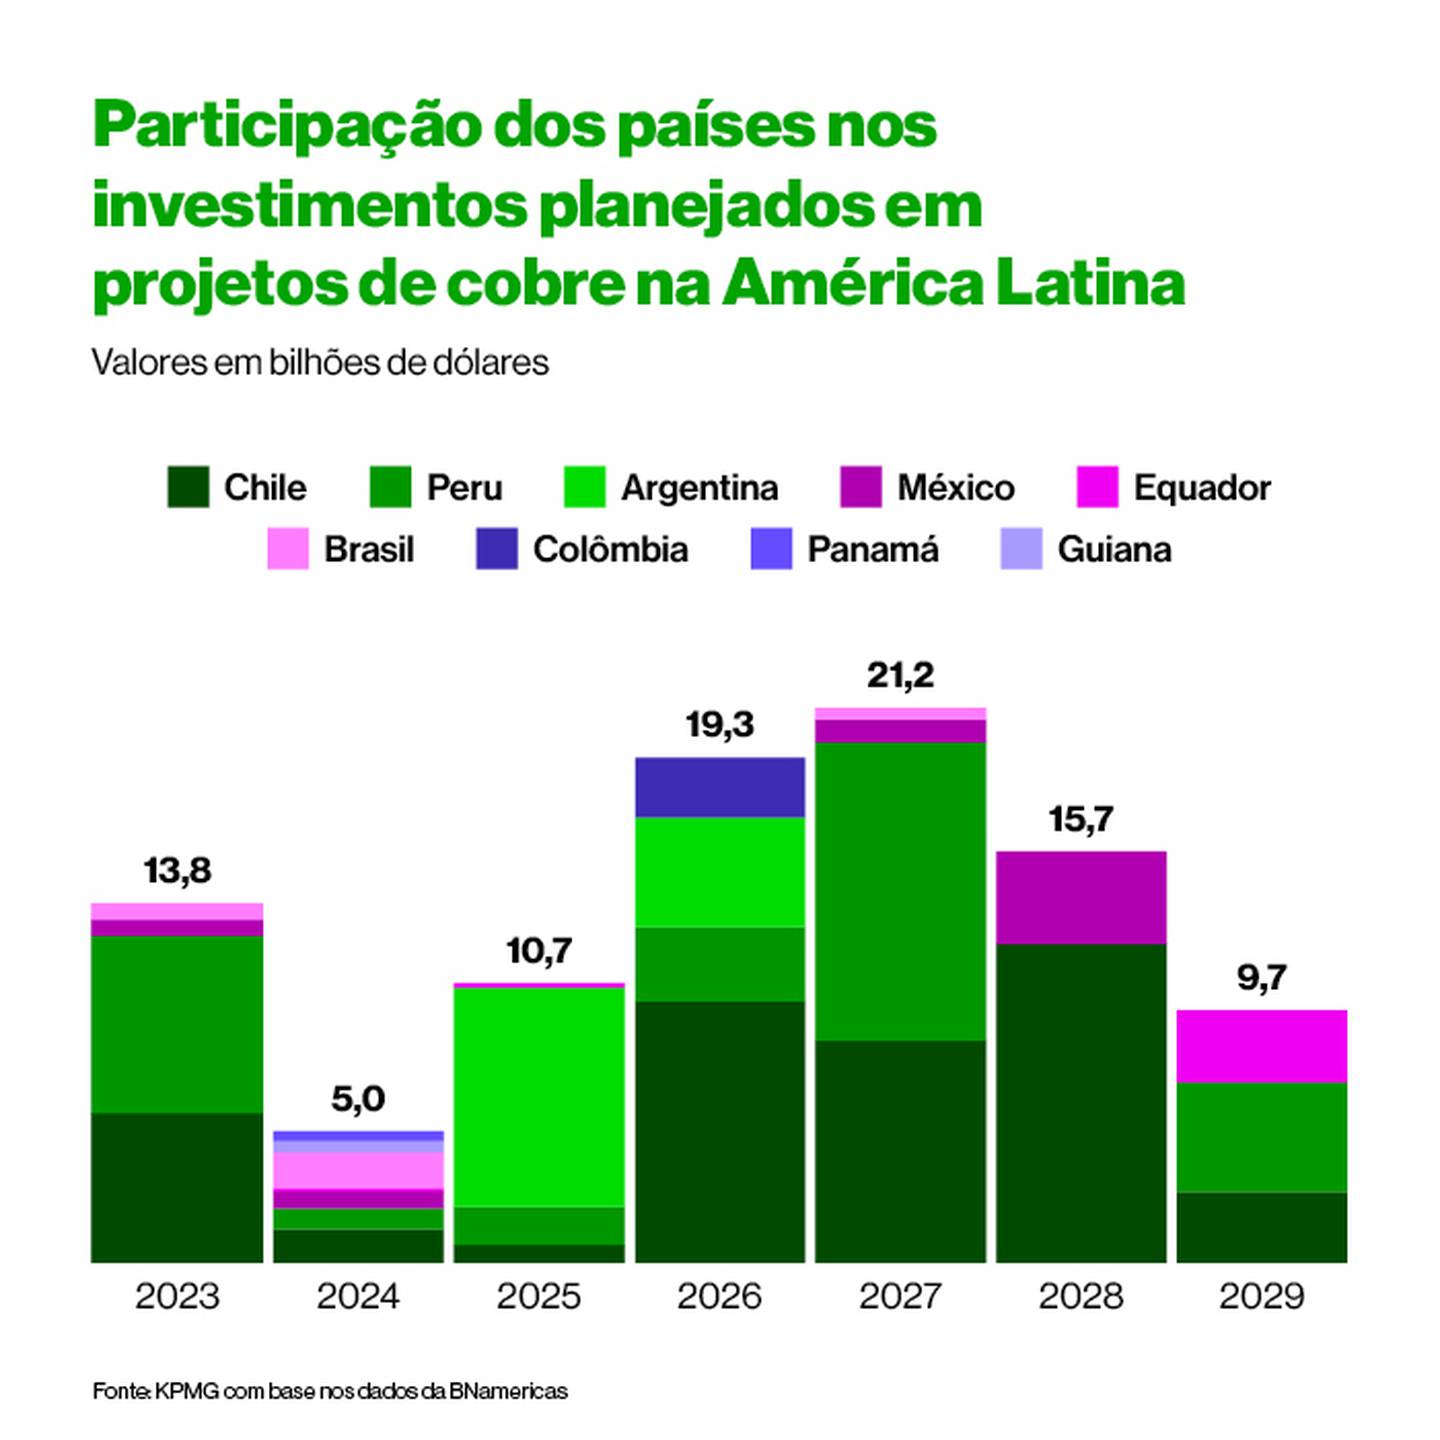 (Fonte: Bloomberg Línea com dados da KPMG)dfd